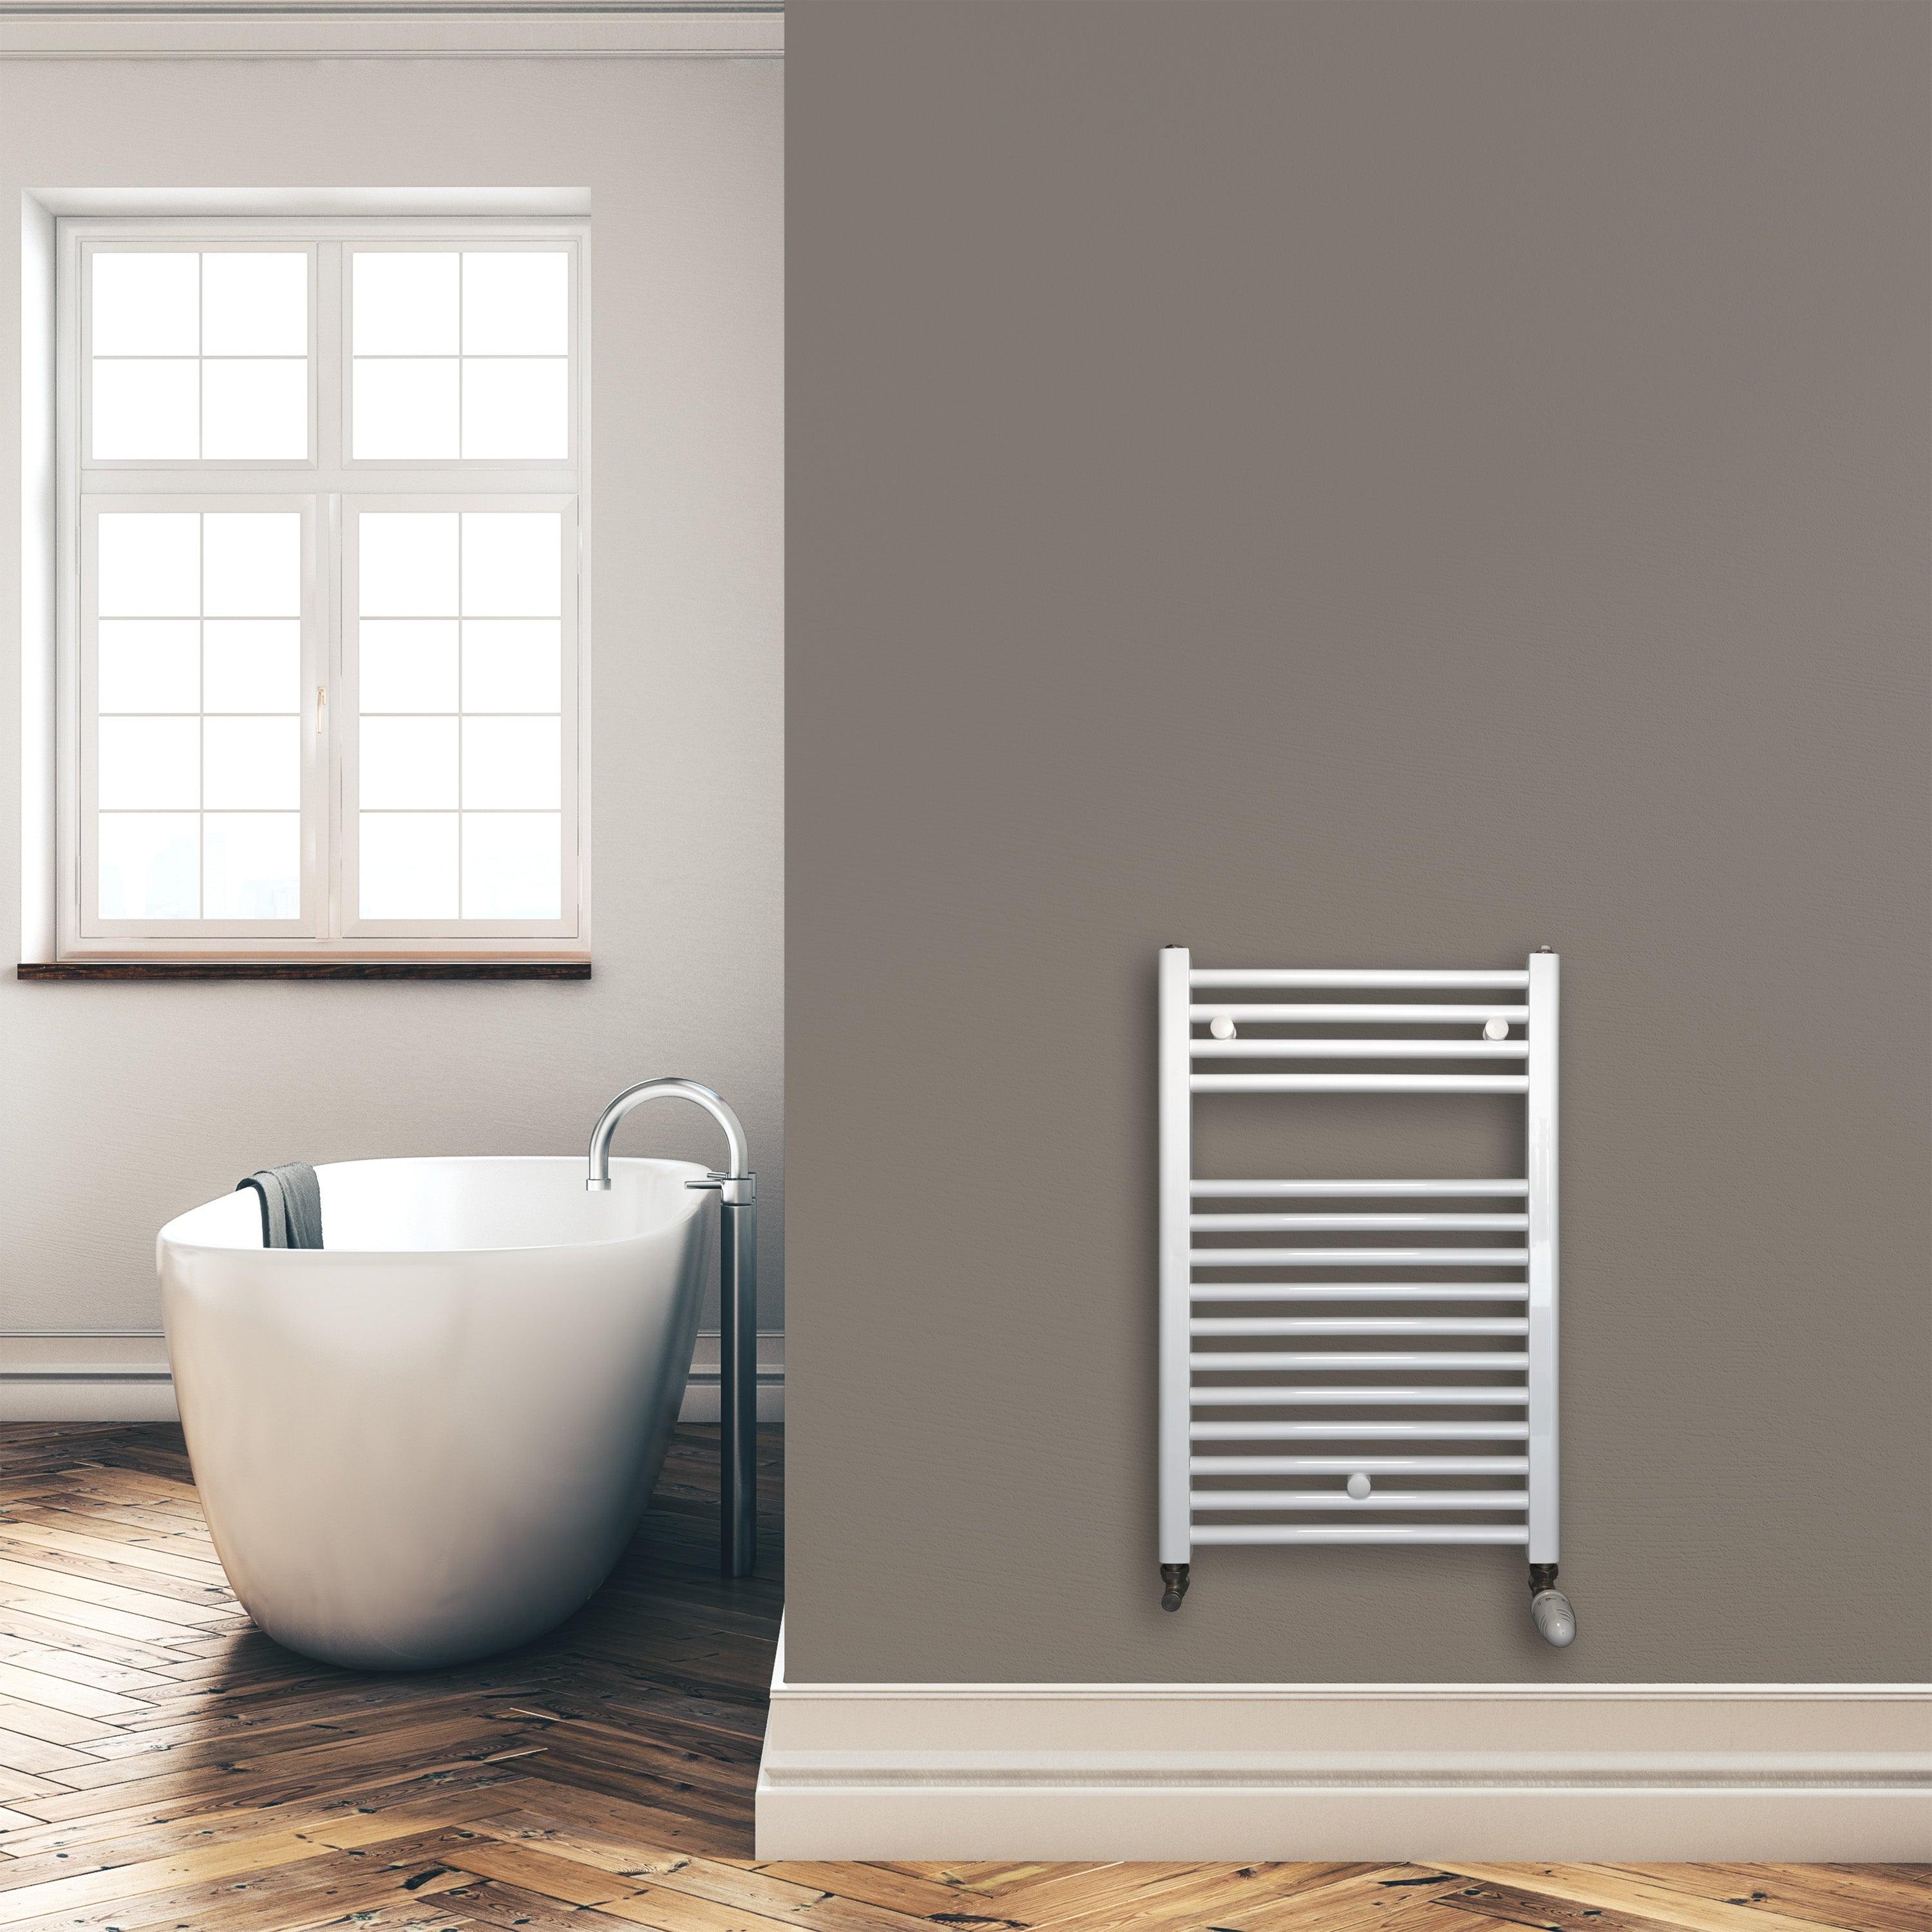 Badheizkörper 764 x 500 mm gerade mit Standardanschluss Handtuchhalter Badezimmer Heizung Handtuchwärmer weiß Montagebeispiel - heizkoerper.shop